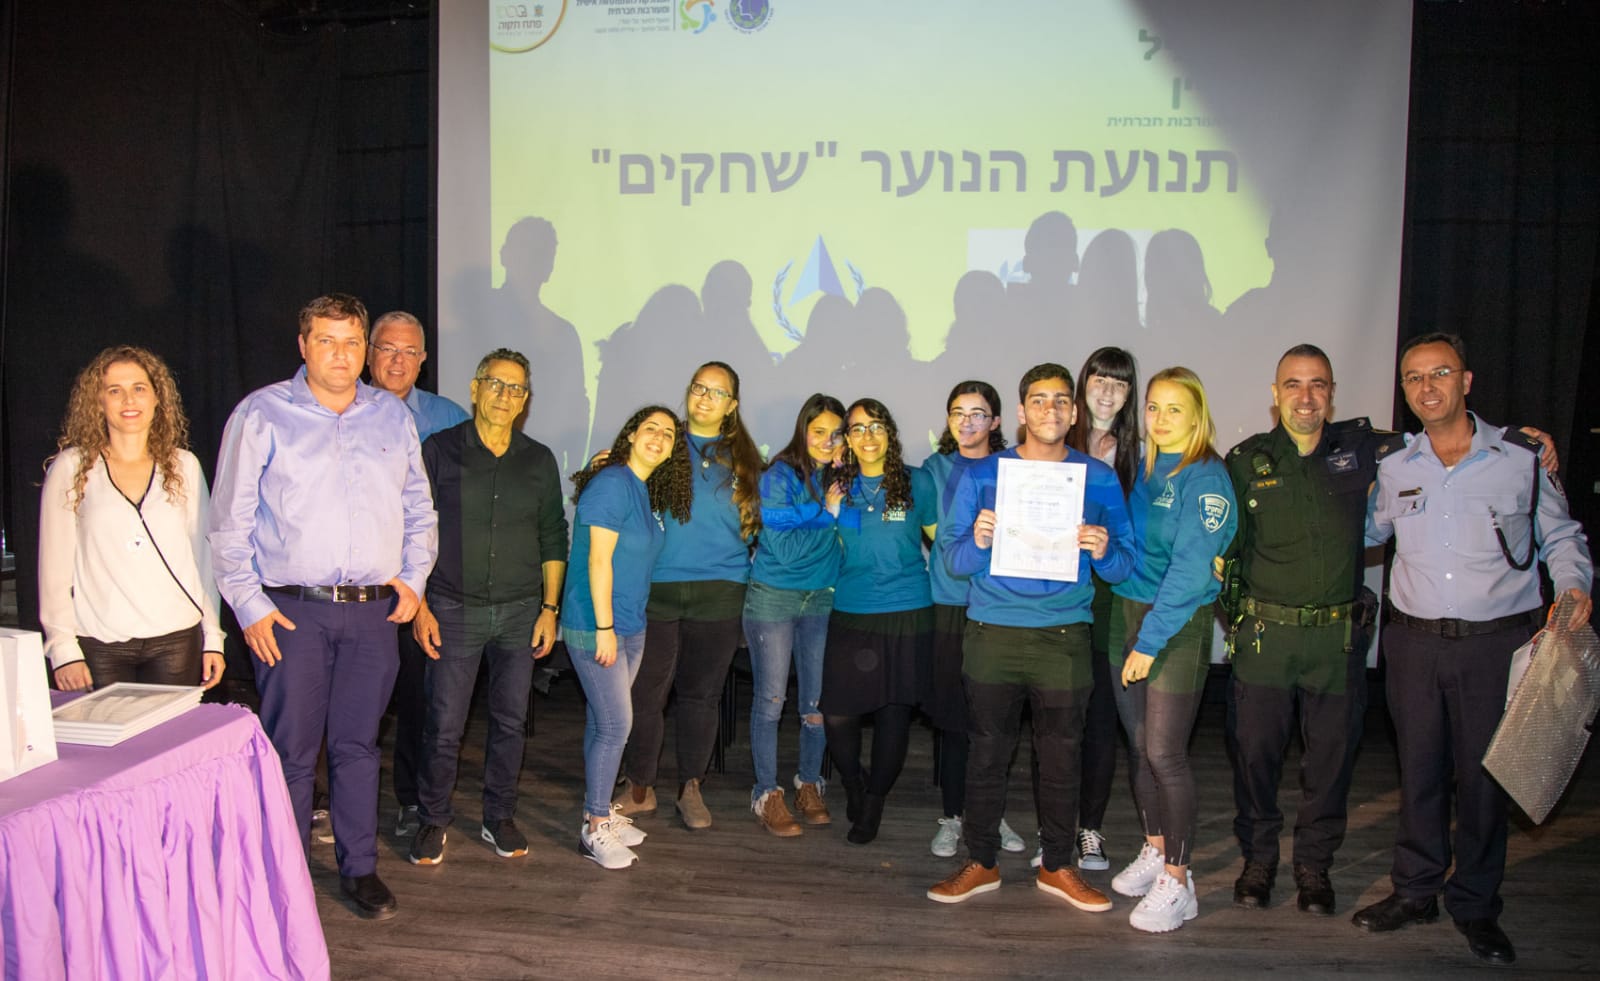 פתח תקוה מציגה: העיר היחידה בישראל בה פועלים 4 סניפי תנועת הנוער "שחקים" של משטרת ישראל